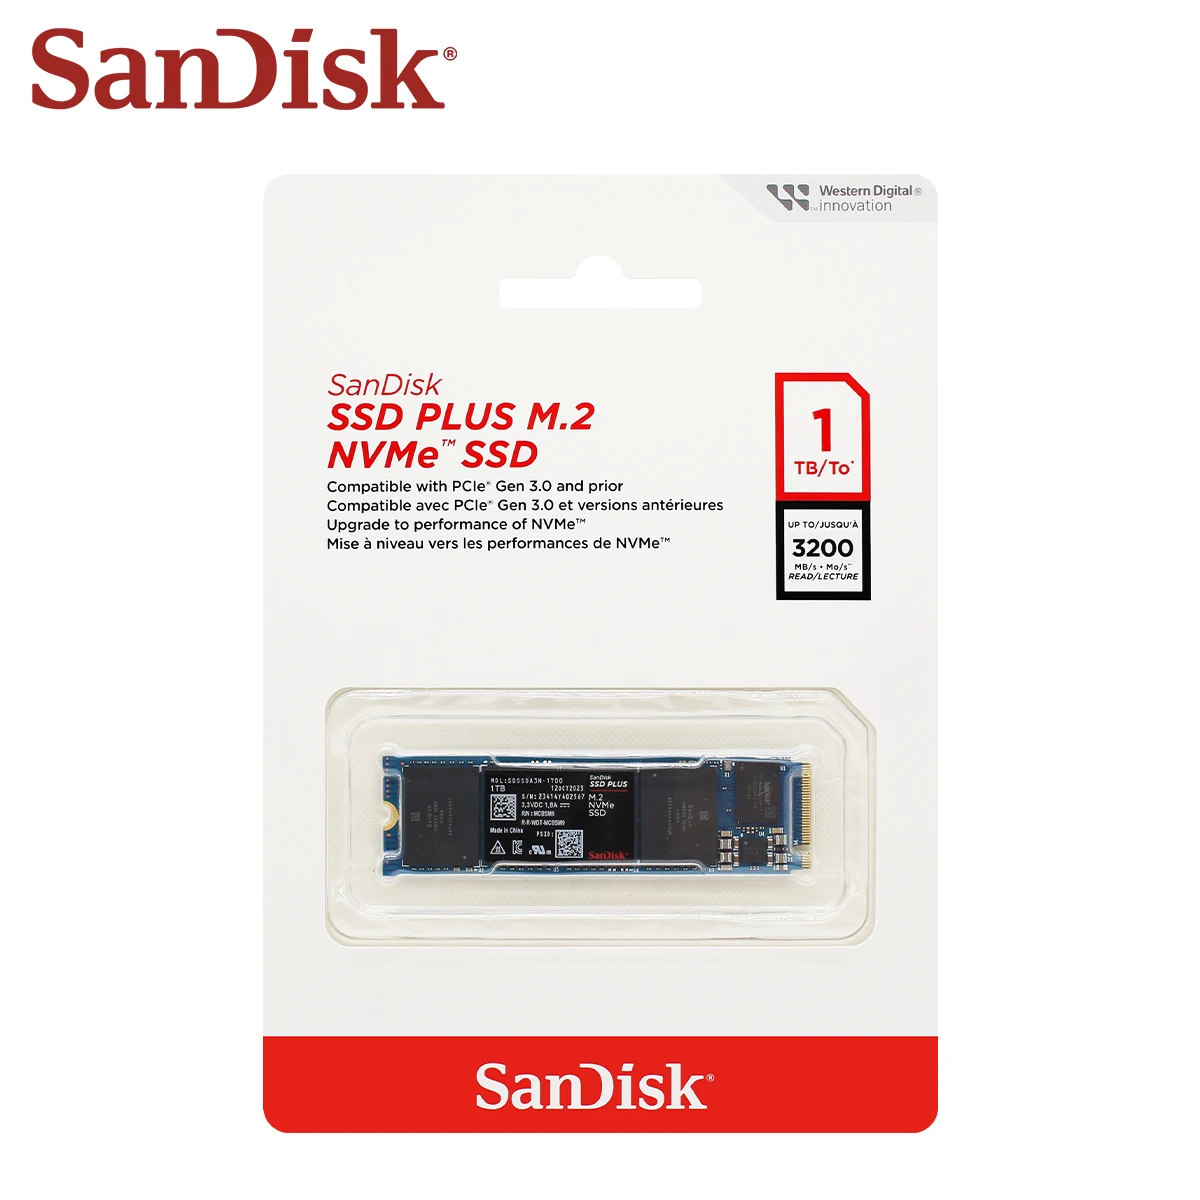 Nový  sandisk SSD plus M.2 SSD 250GB 500GB 1TB 2TB vnitřní celistvý konstatovat  M.2 2280 pcie gen 3.0 vnitřní vysoký rychlost ssd nvme